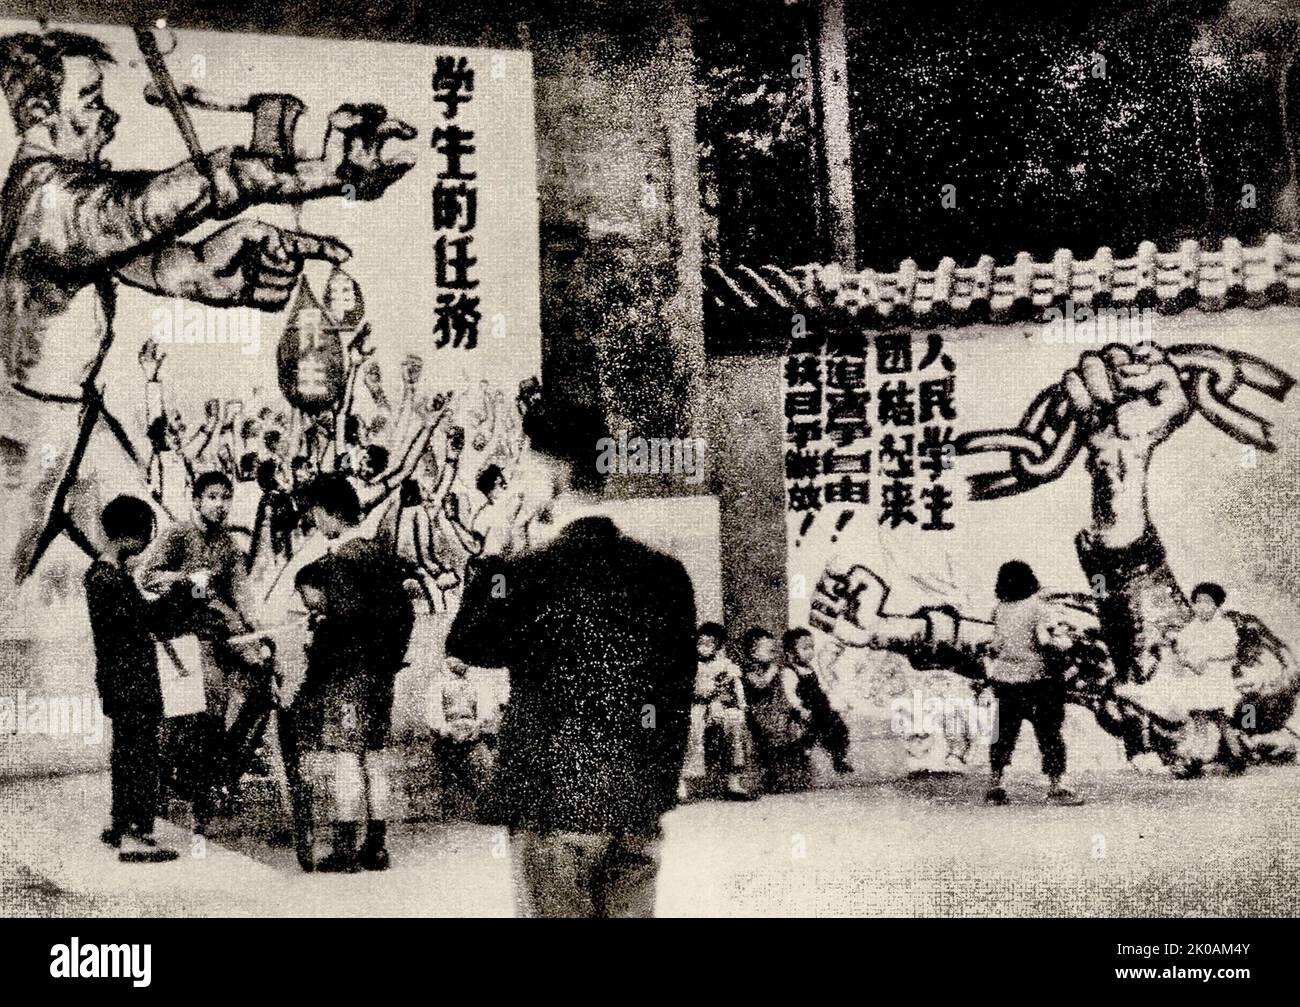 Une photo a été exposée lors de la réunion commémorative organisée par des étudiants de Shanghai, intitulée: "La route de la jeunesse chinoise du 4 mai (1919) au 4 mai (1948)". La photo est une partie de l'image exposée. Banque D'Images